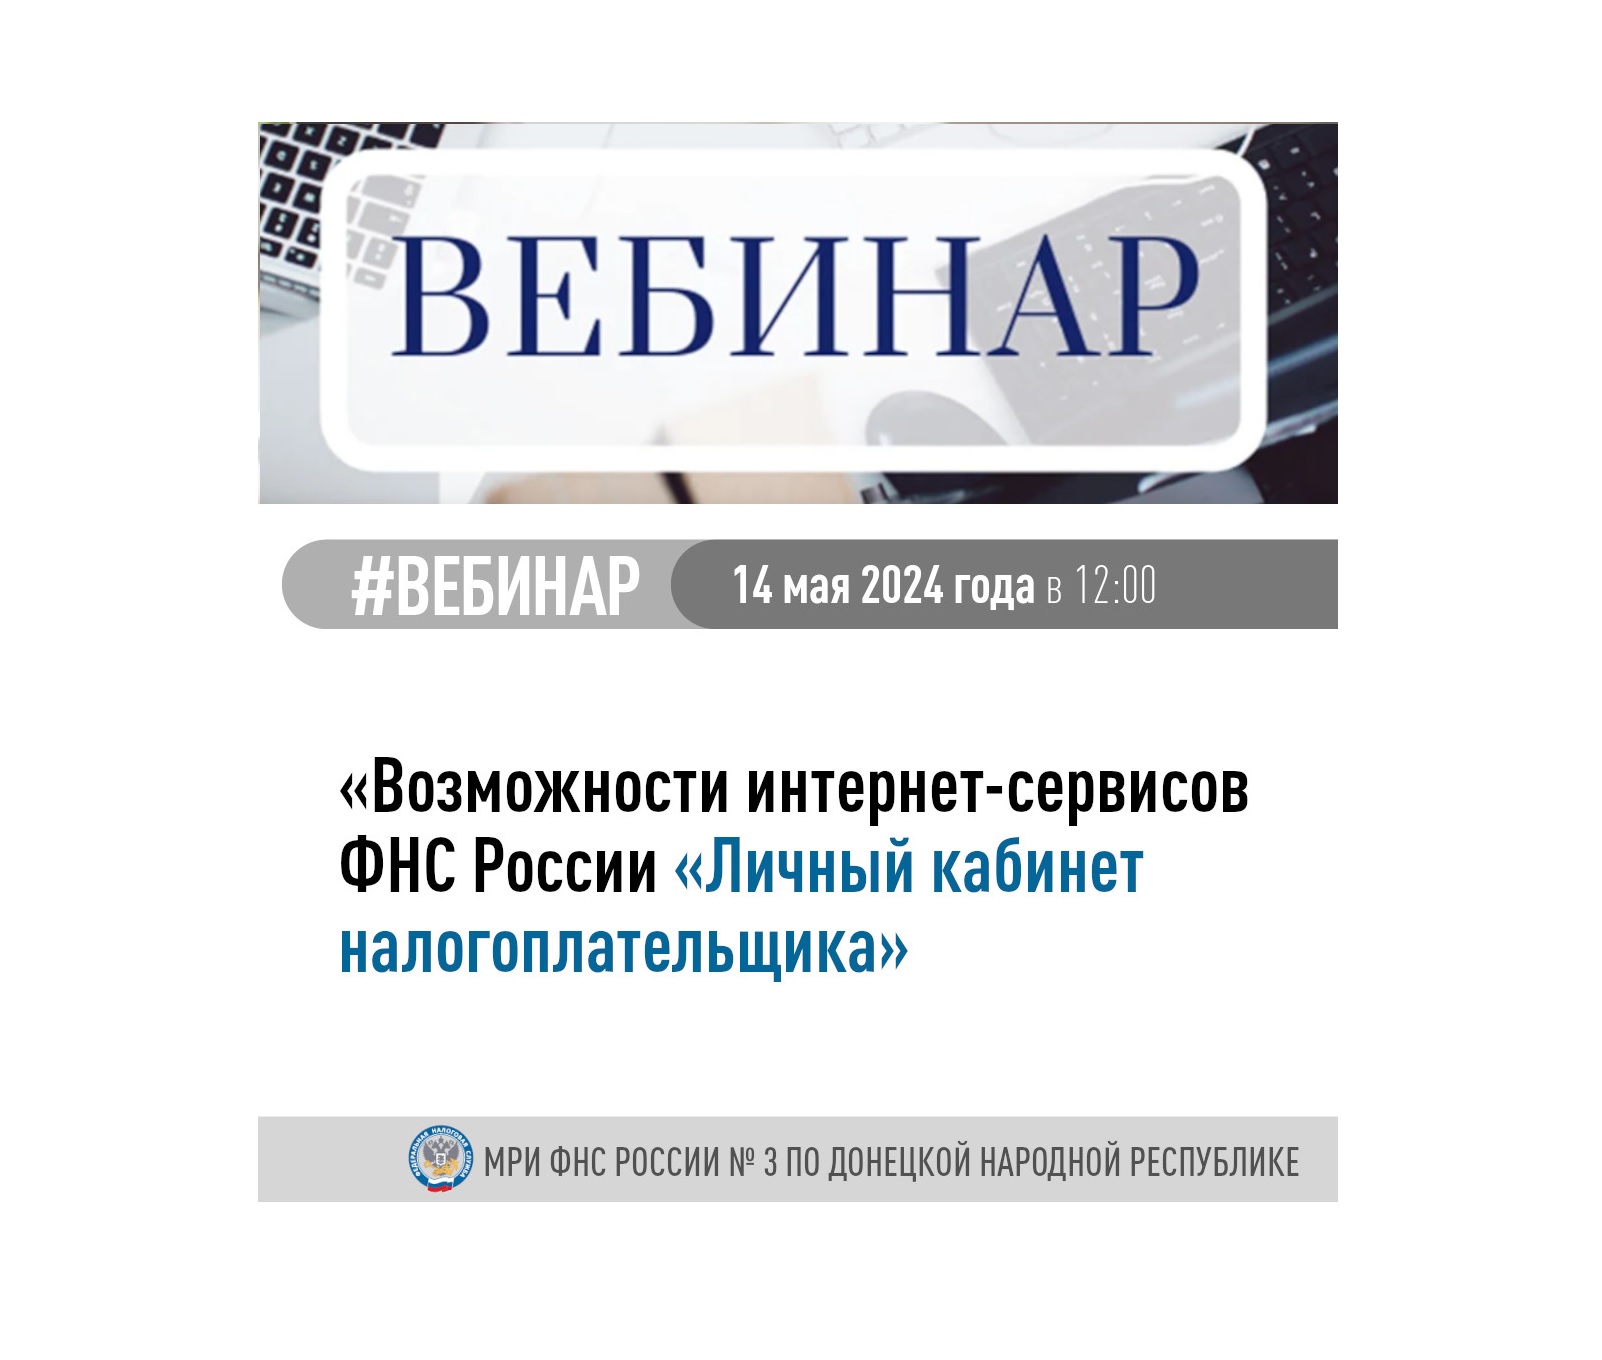 Межрайонная ИФНС России № 3 по Донецкой Народной Республике приглашает принять участие в вебинаре.